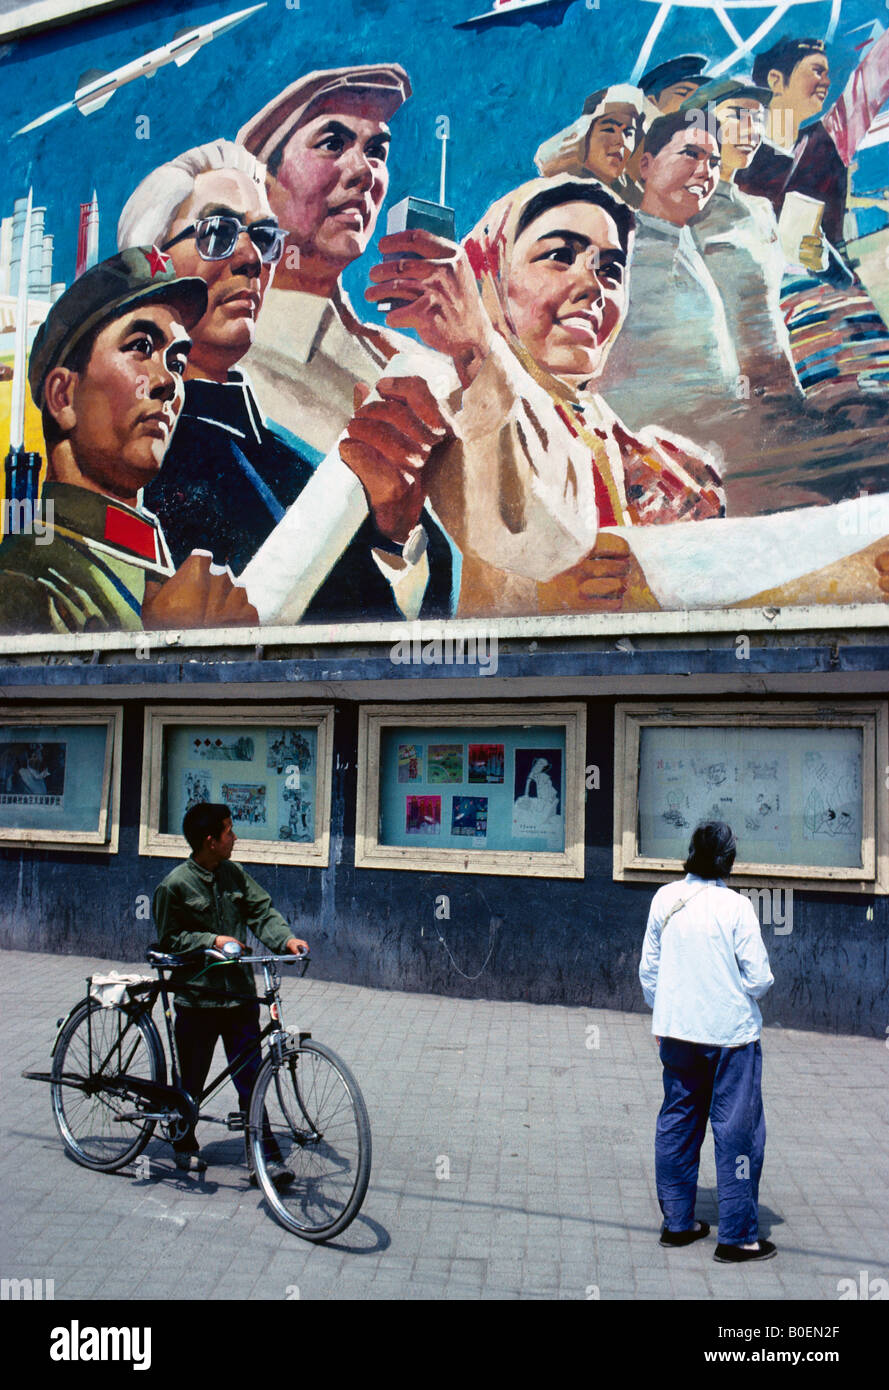 1979-Plakat in der Innenstadt von Chengdu Sichuan Provinz im Stil des sozialistischen Realismus Förderung der vier Modernisierungen Programm Stockfoto